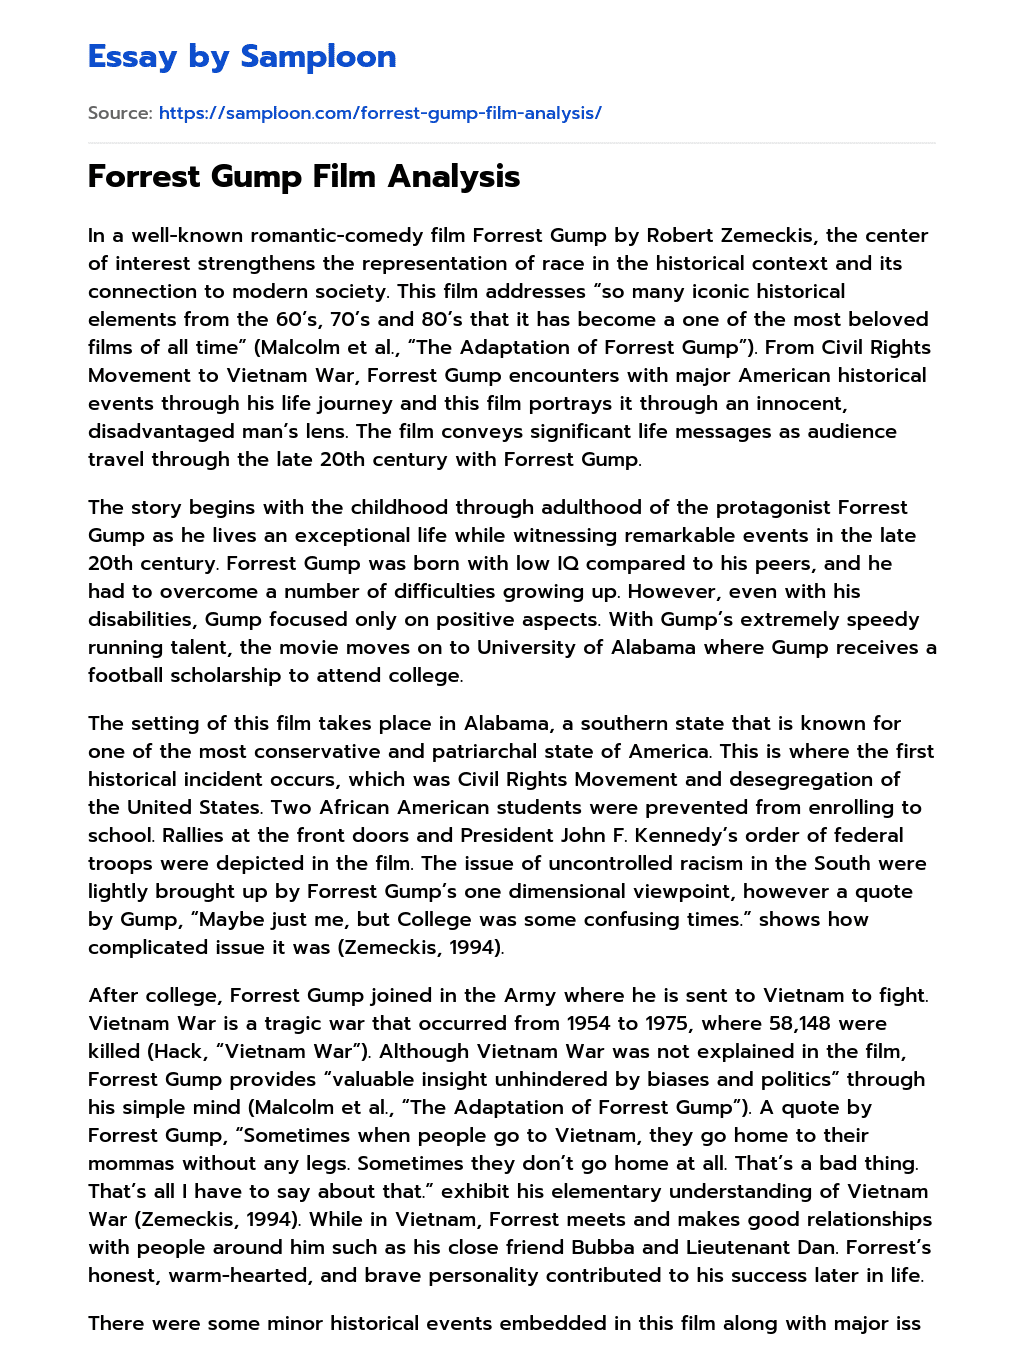 Forrest Gump Film Analysis essay